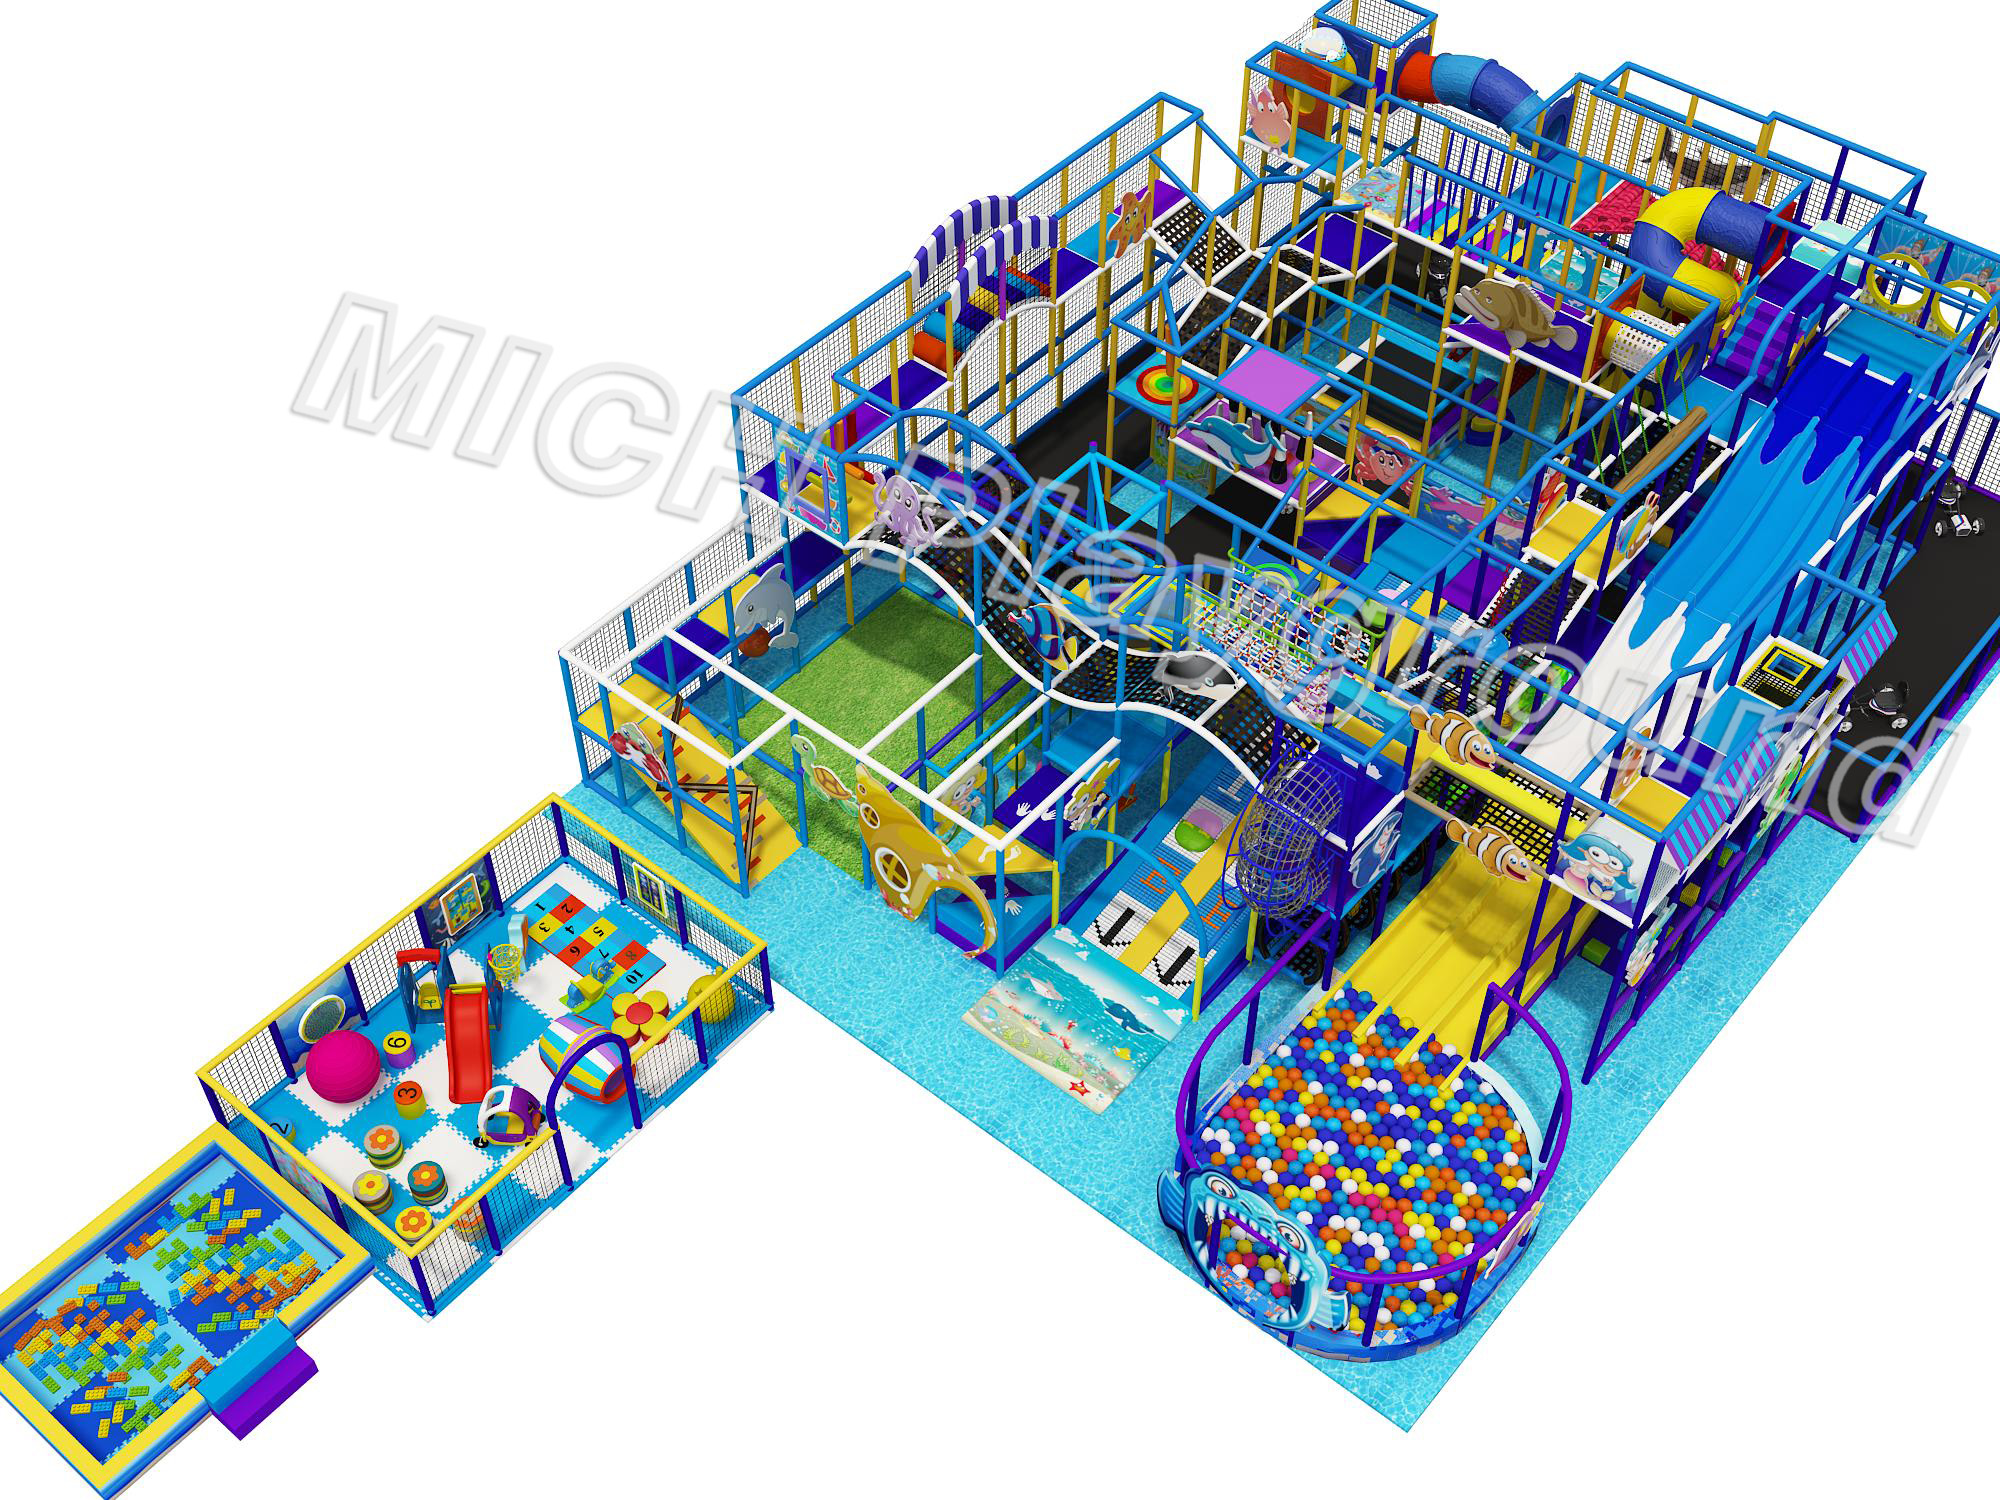 Ocean Theme Children's Indoor Soft Play Area